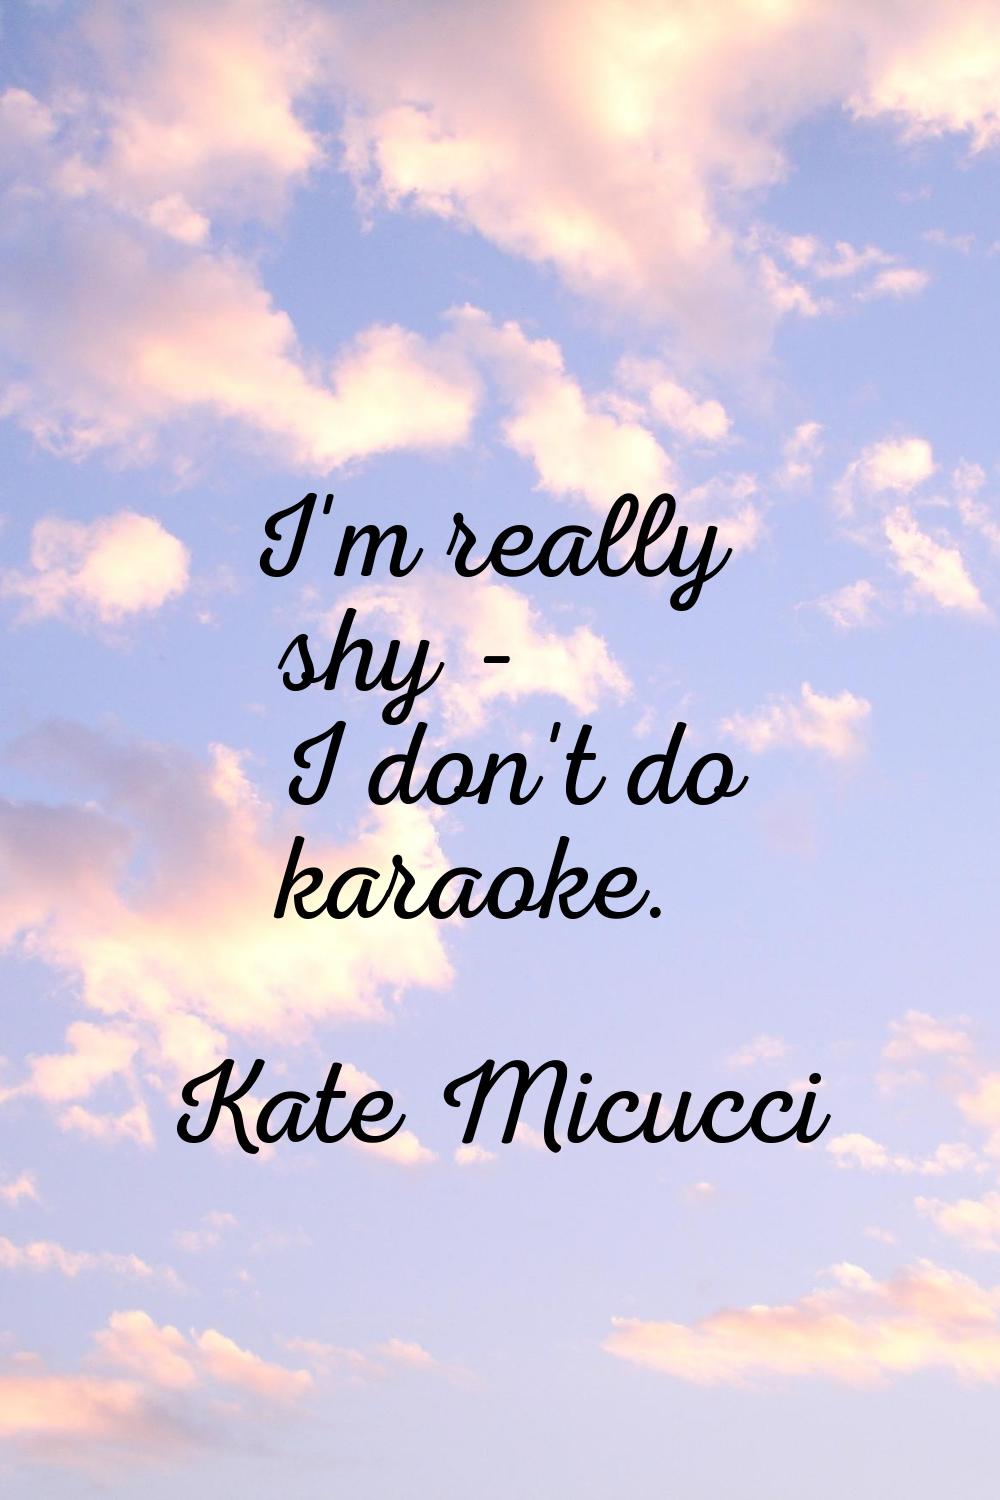 I'm really shy - I don't do karaoke.